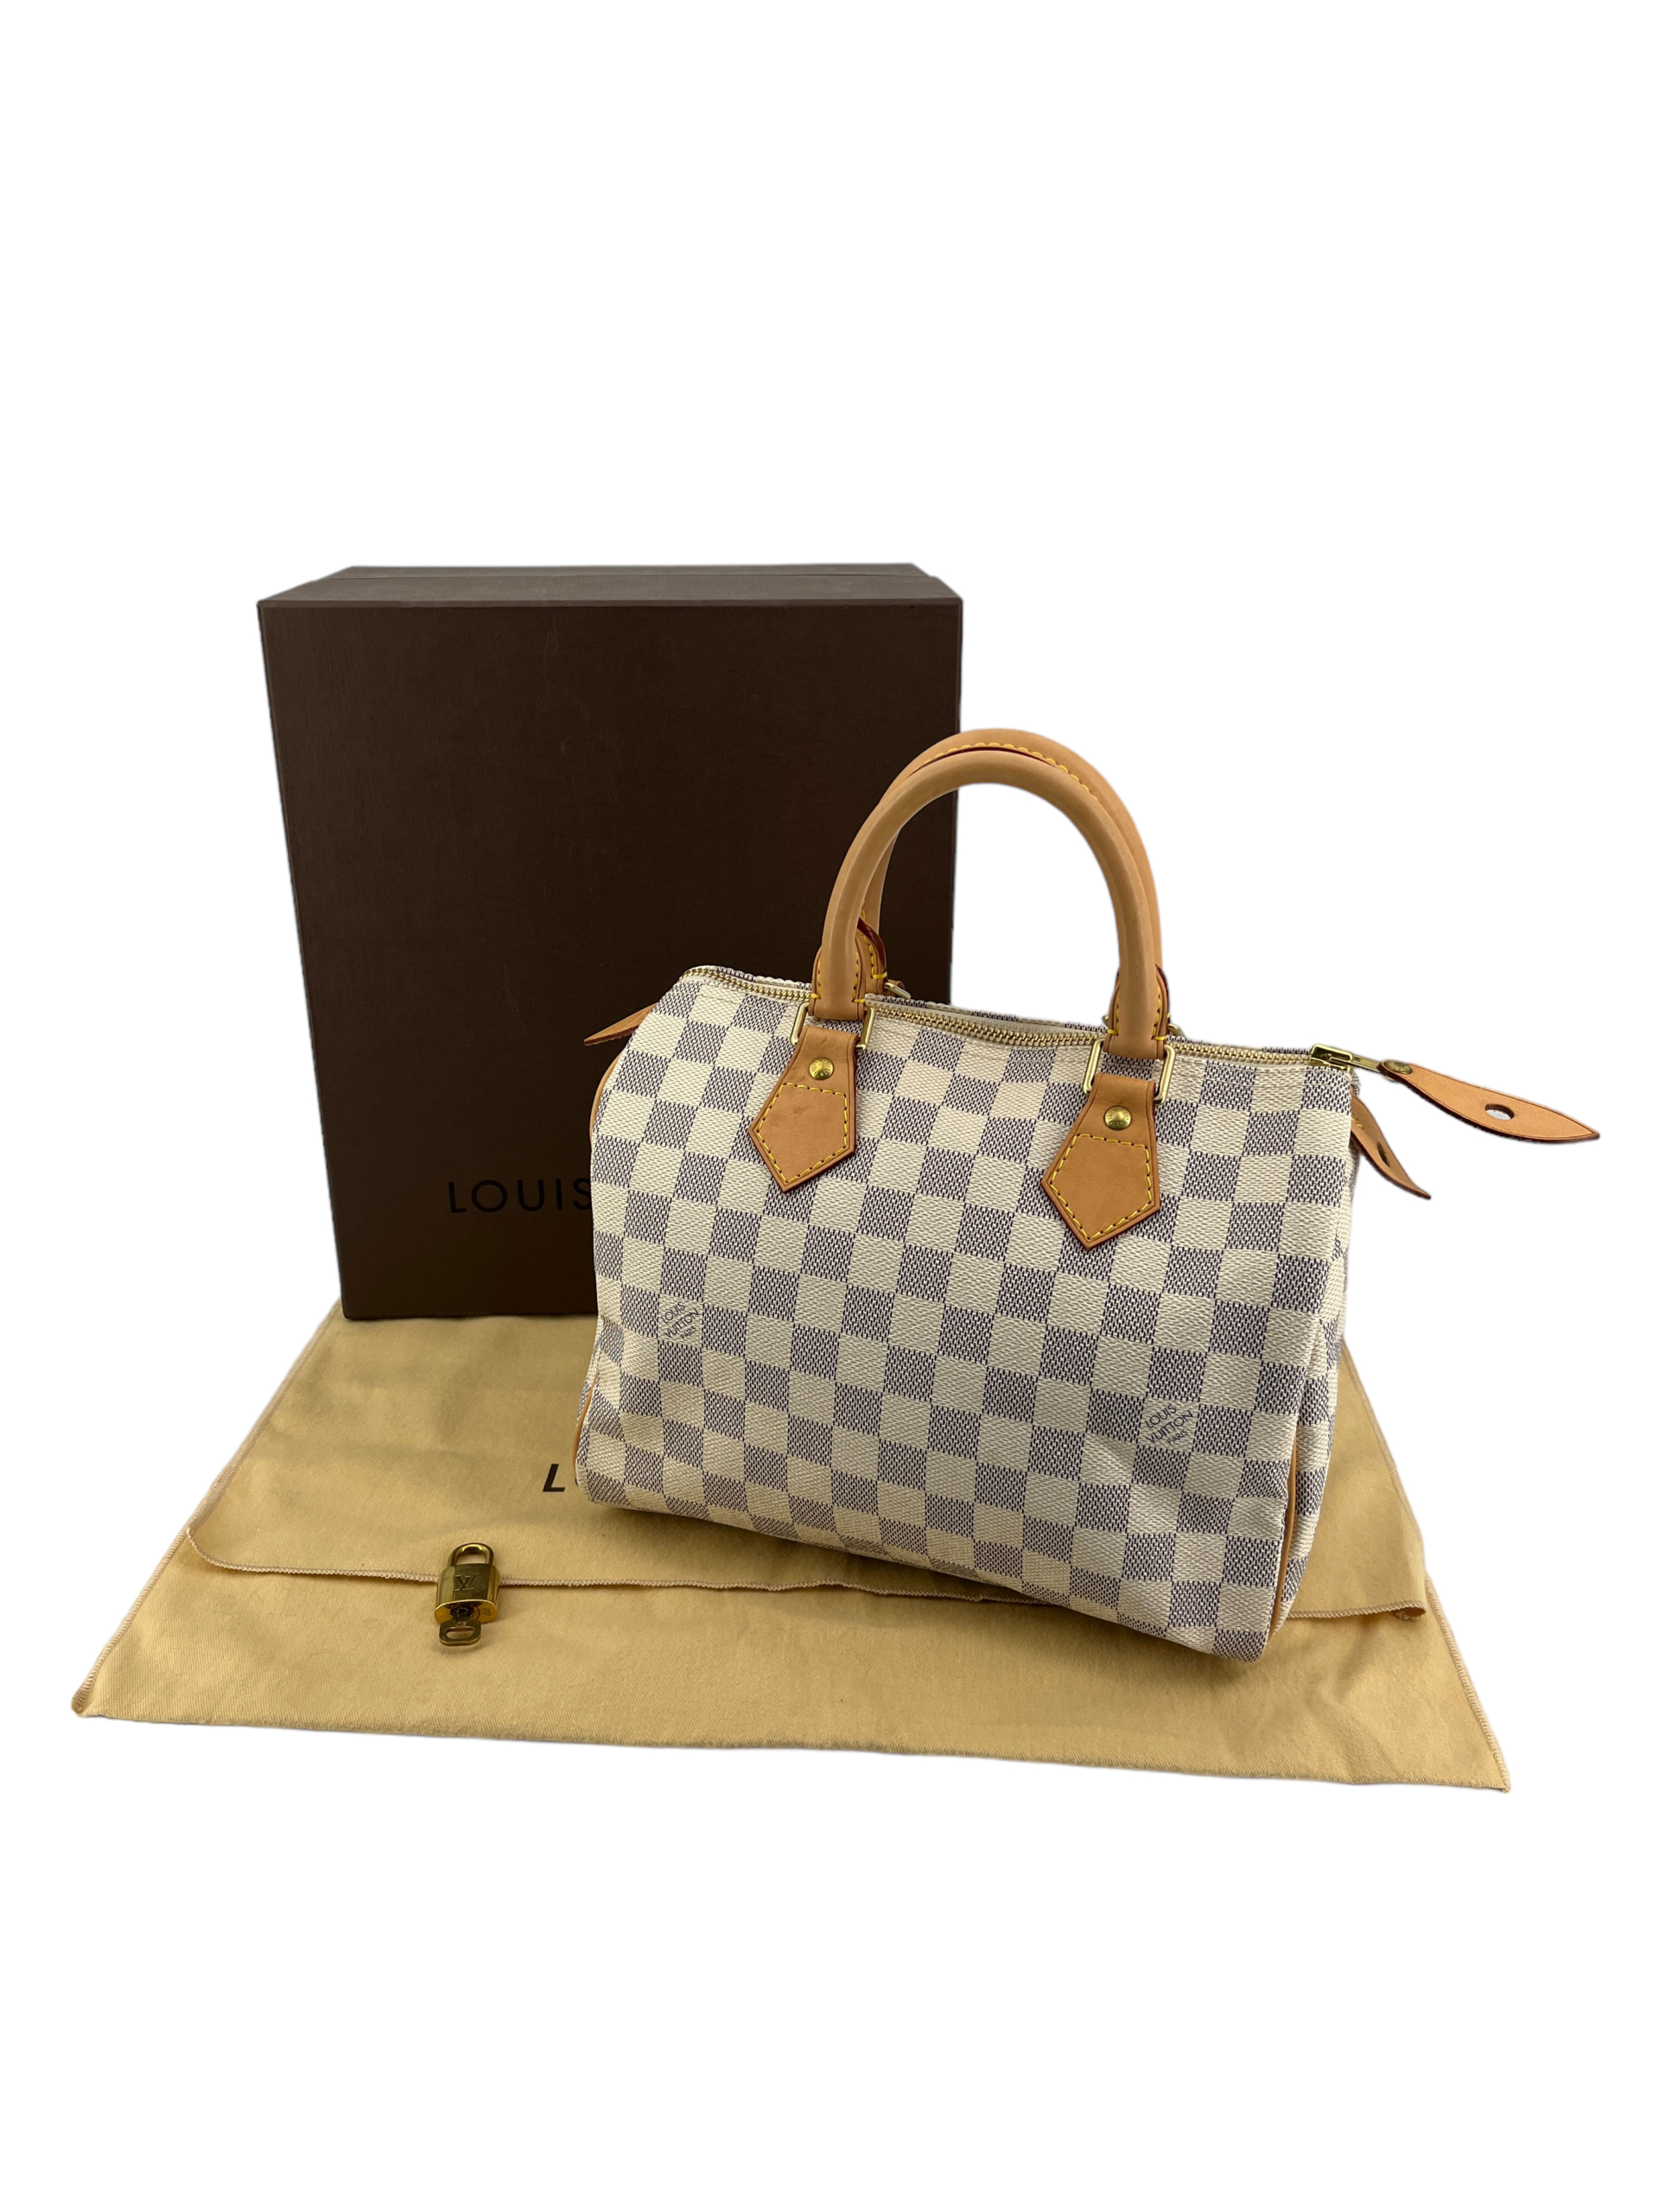 Louis Vuitton Speedy Azur Shoulder Bag in White Canvas